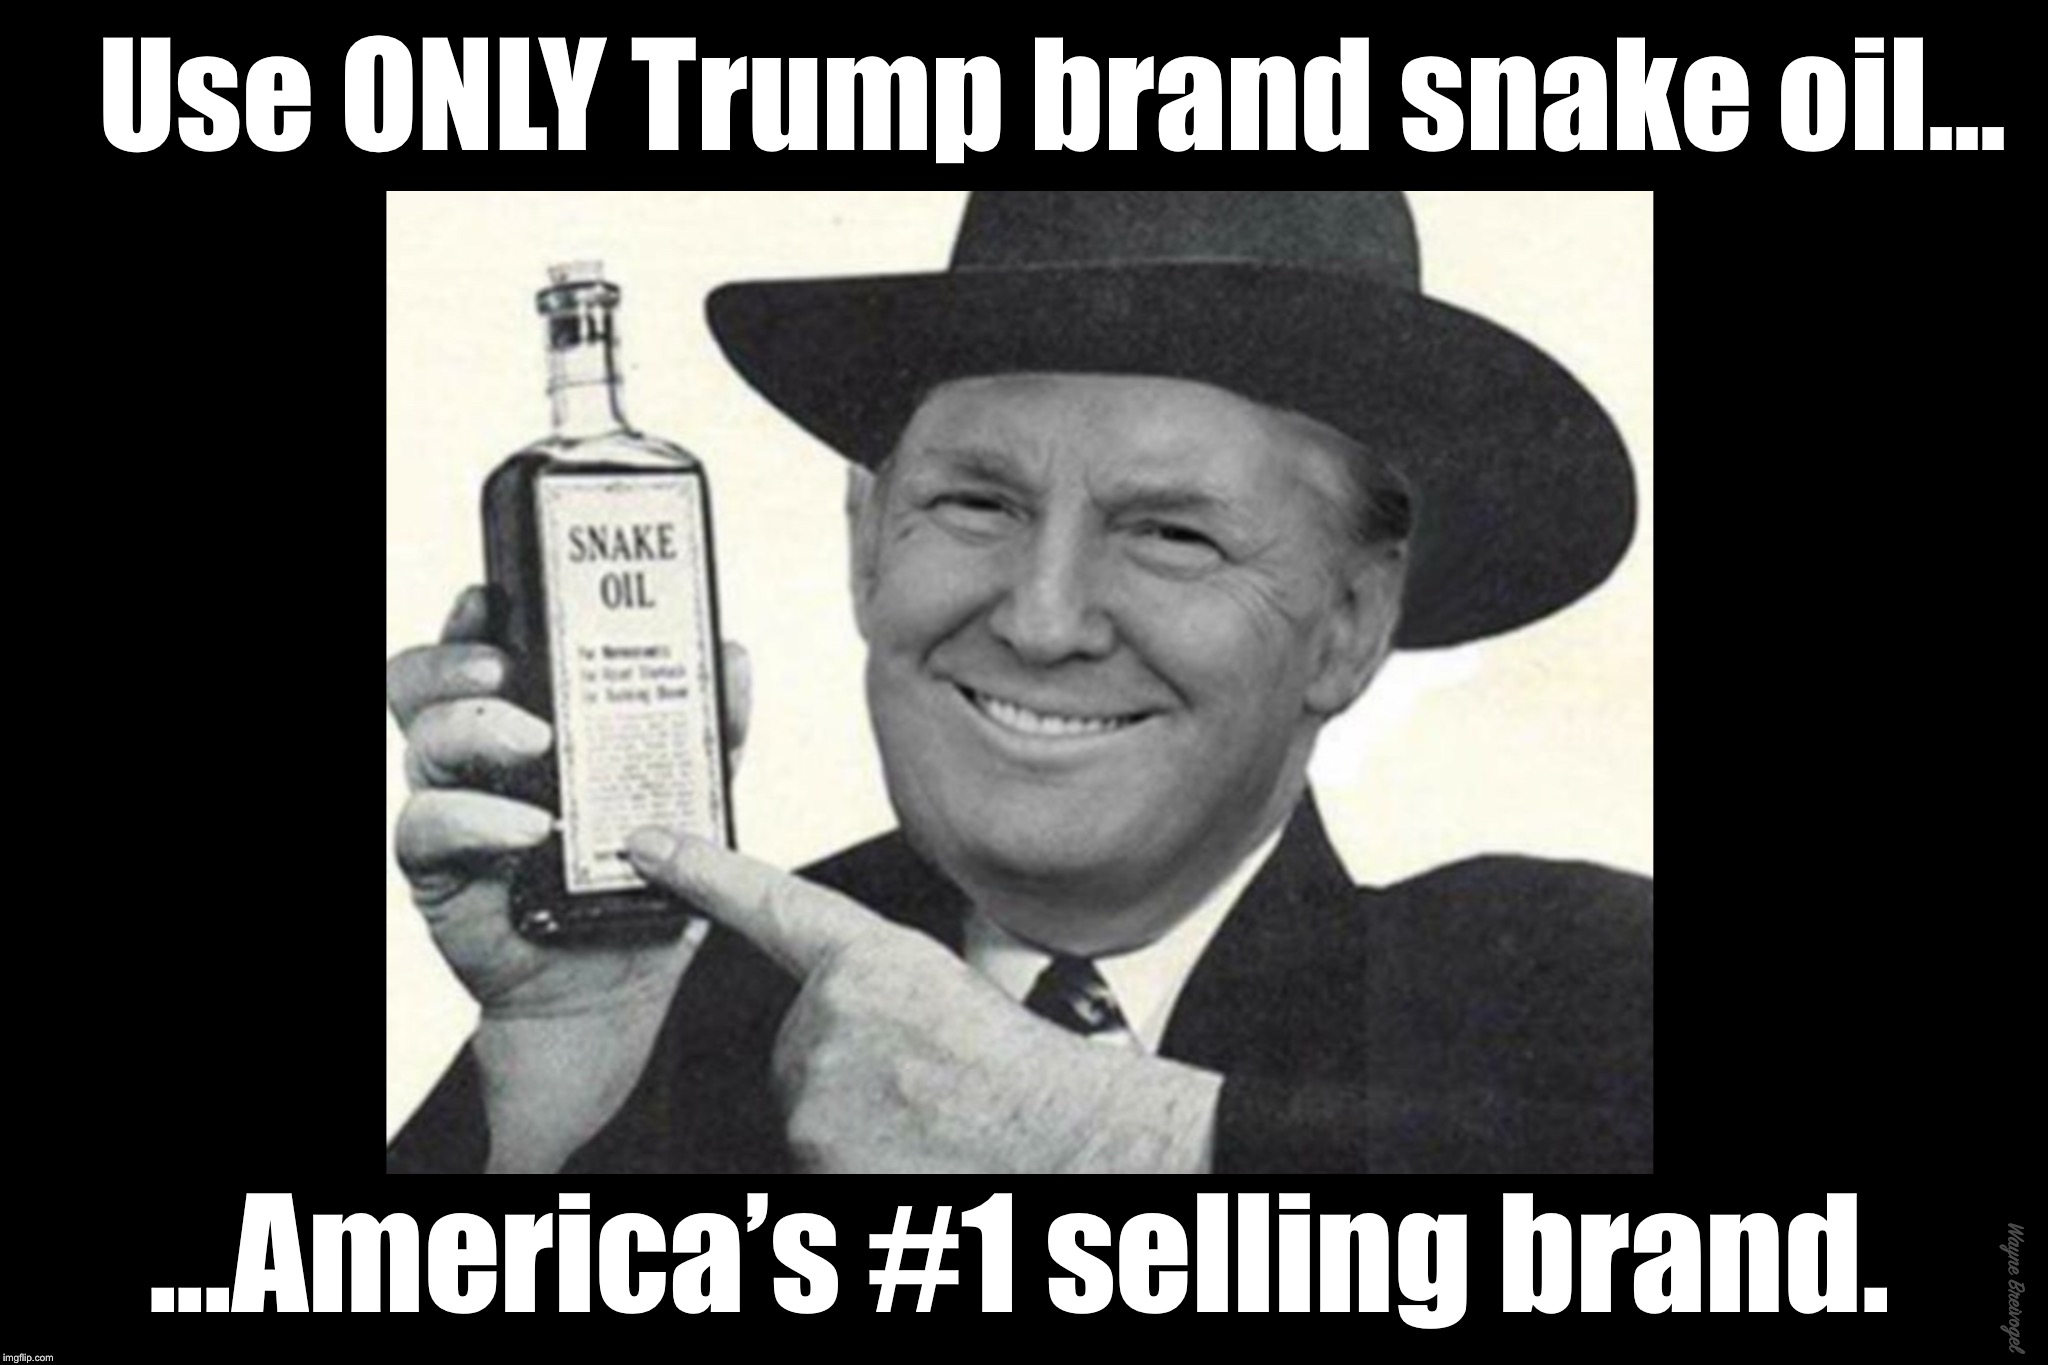 Use ONLY Trump brand snake oil, America’s #1 selling brand | Use ONLY Trump brand snake oil... Wayne Breivogel; ...America’s #1 selling brand. | image tagged in donald trump,snake oil,charlatan,grifter | made w/ Imgflip meme maker